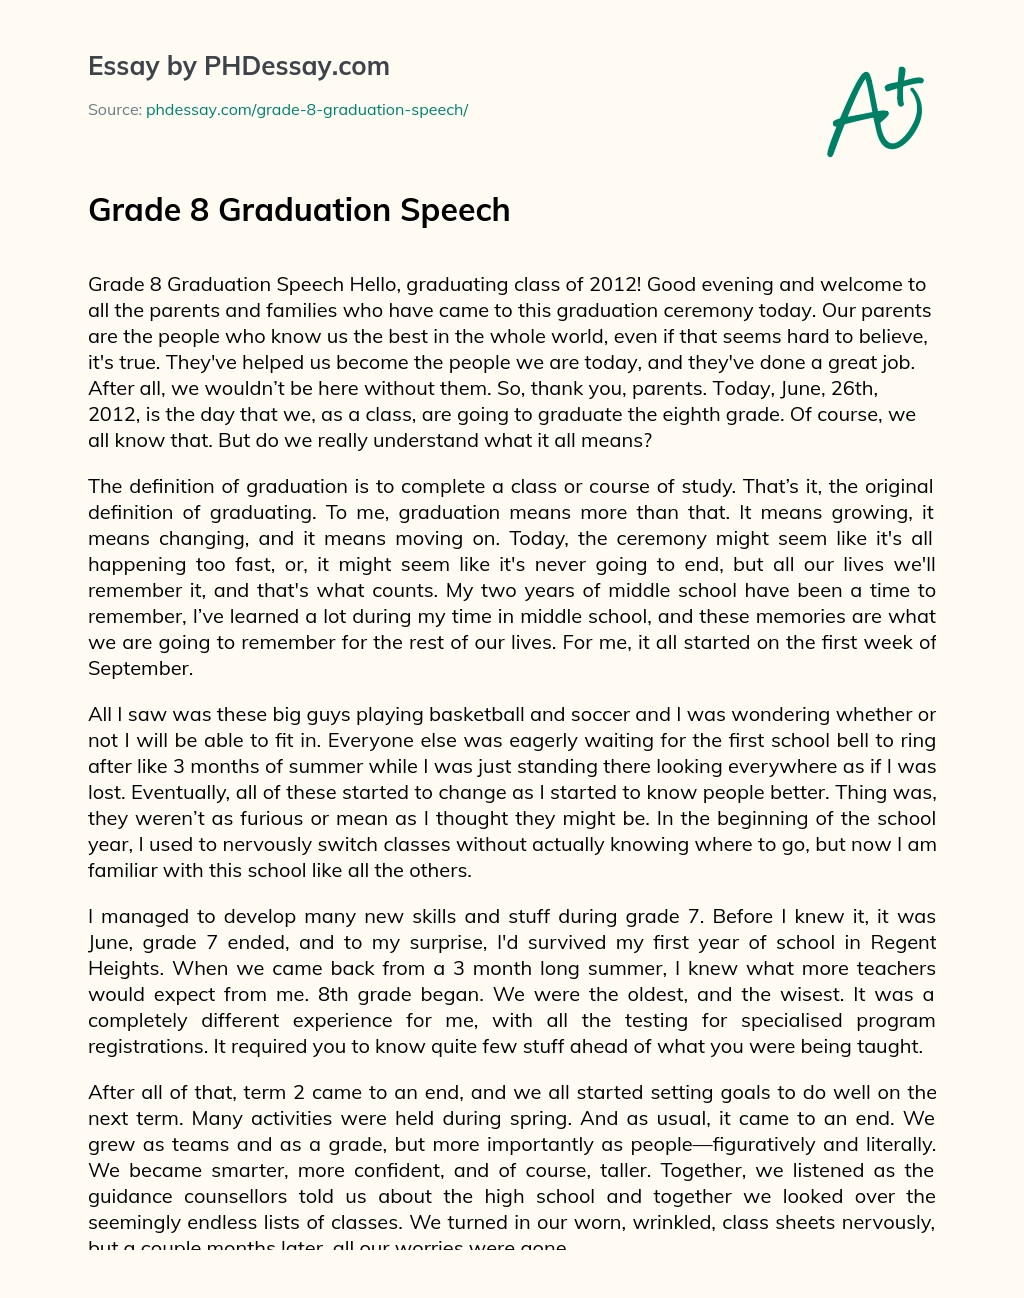 Grade 8 Graduation Speech essay